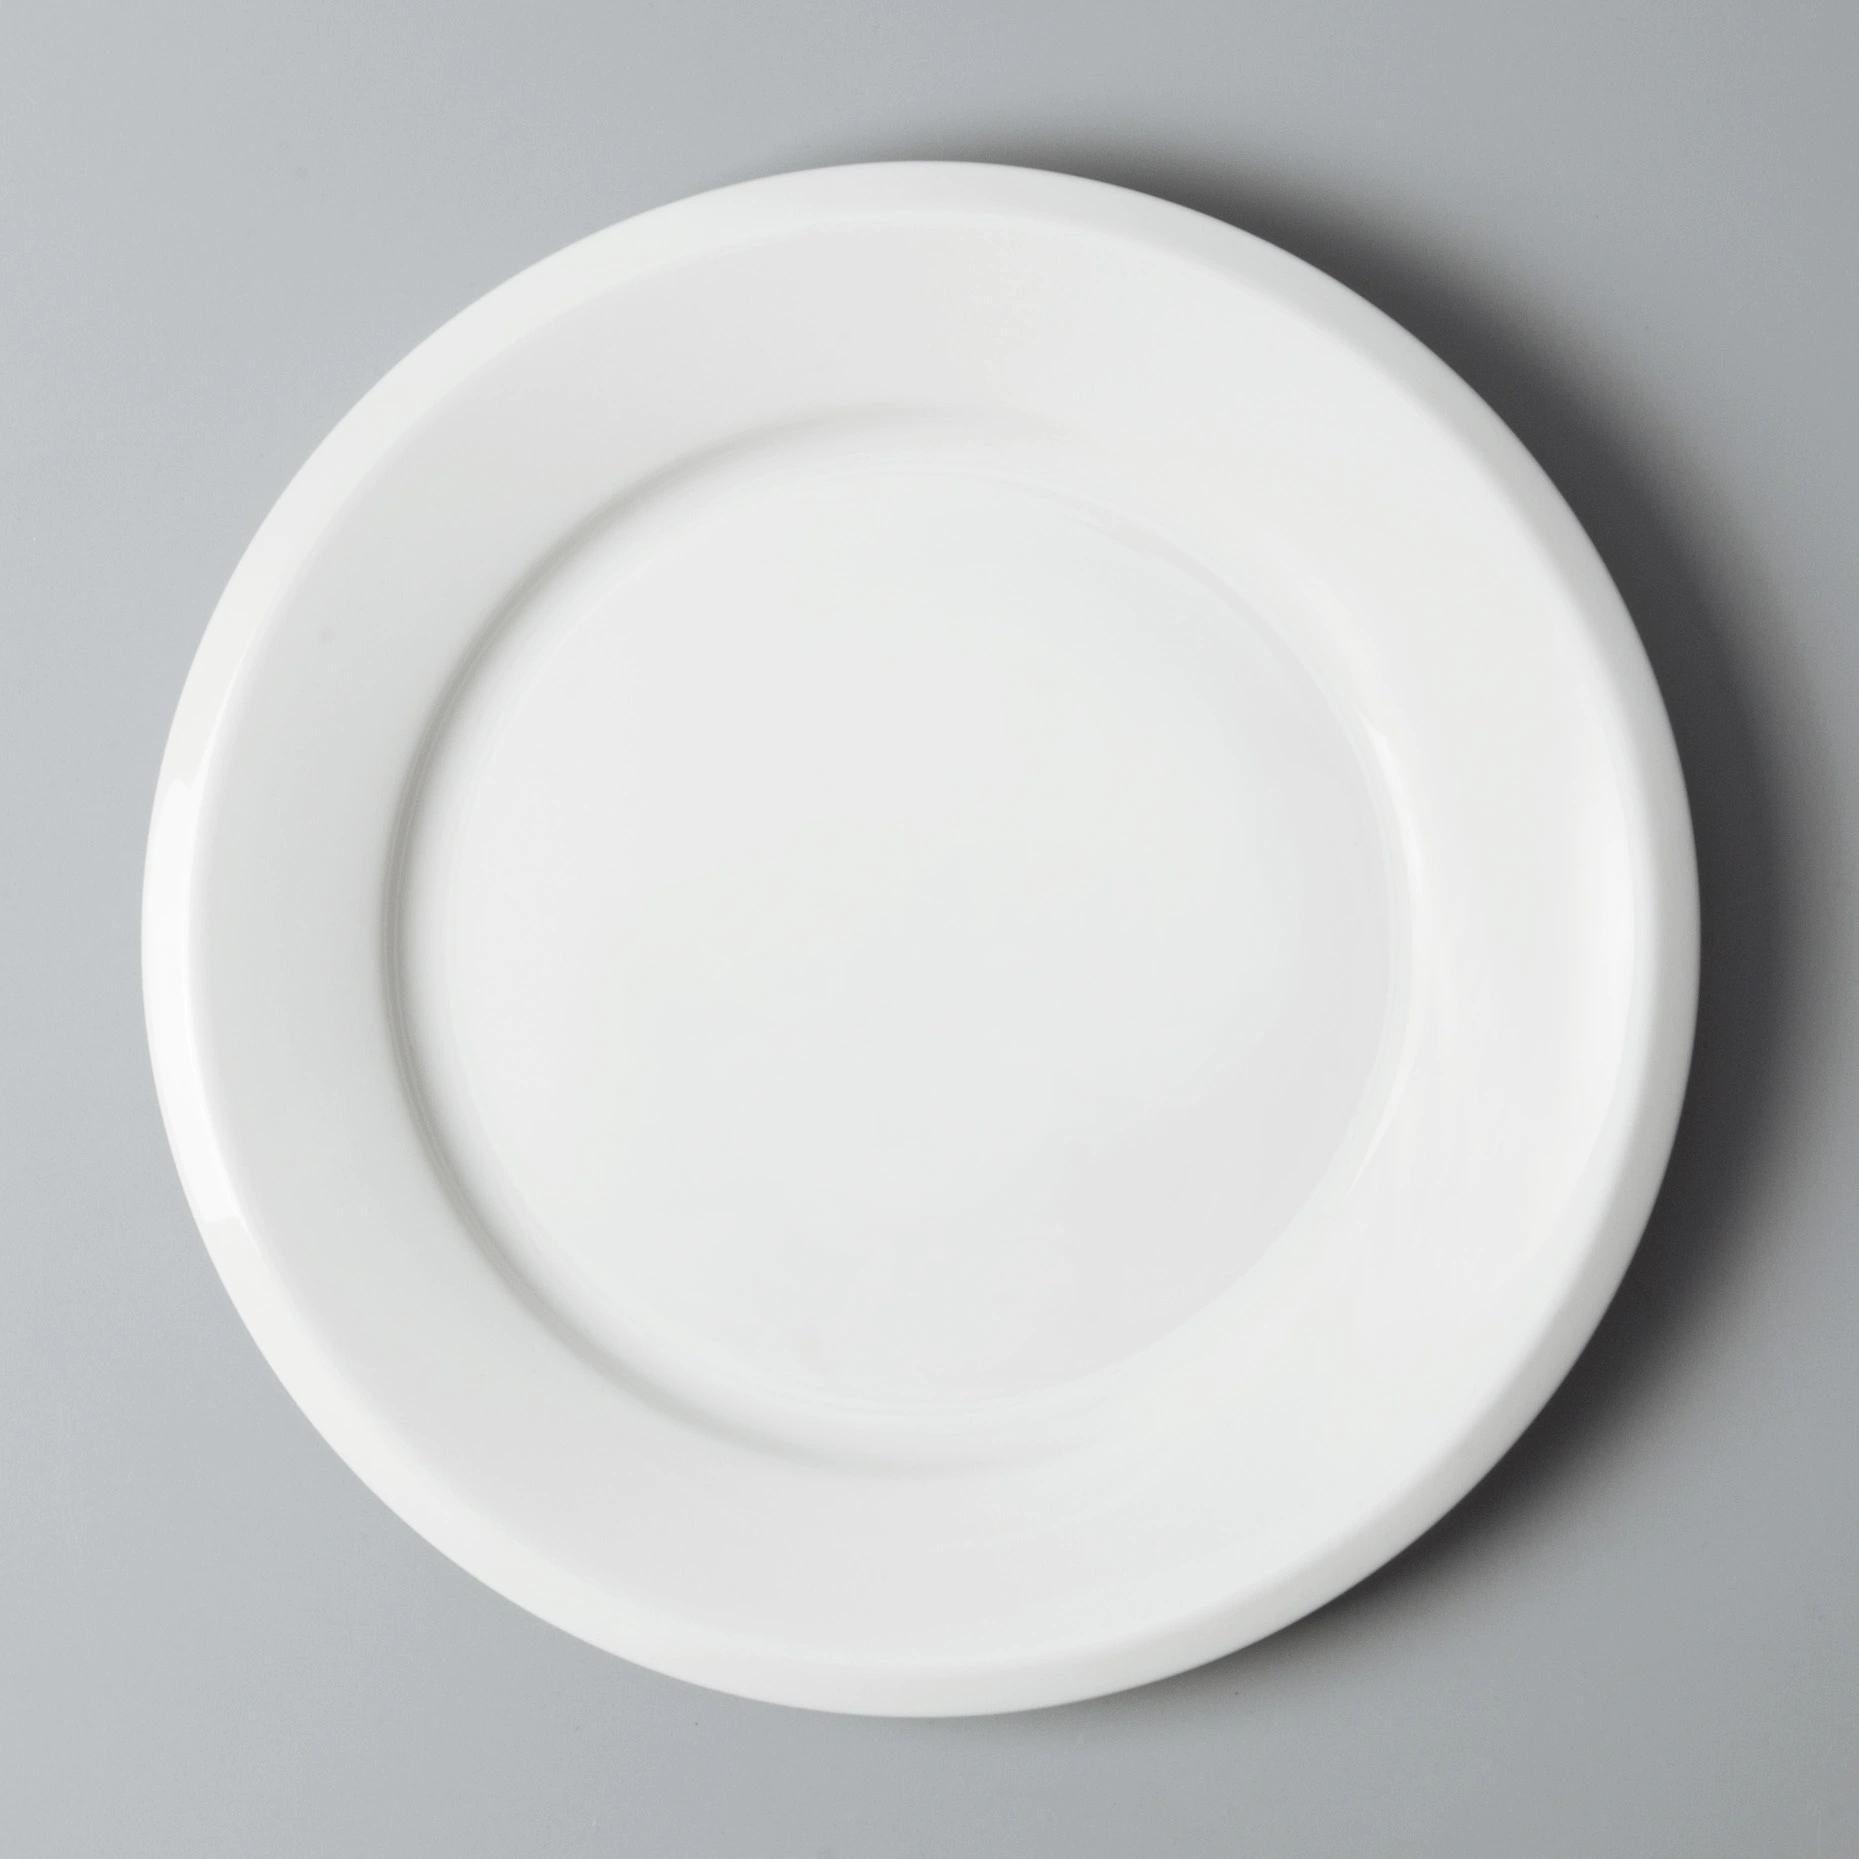 restaurant dinnerware sets sample for restaurant Two Eight